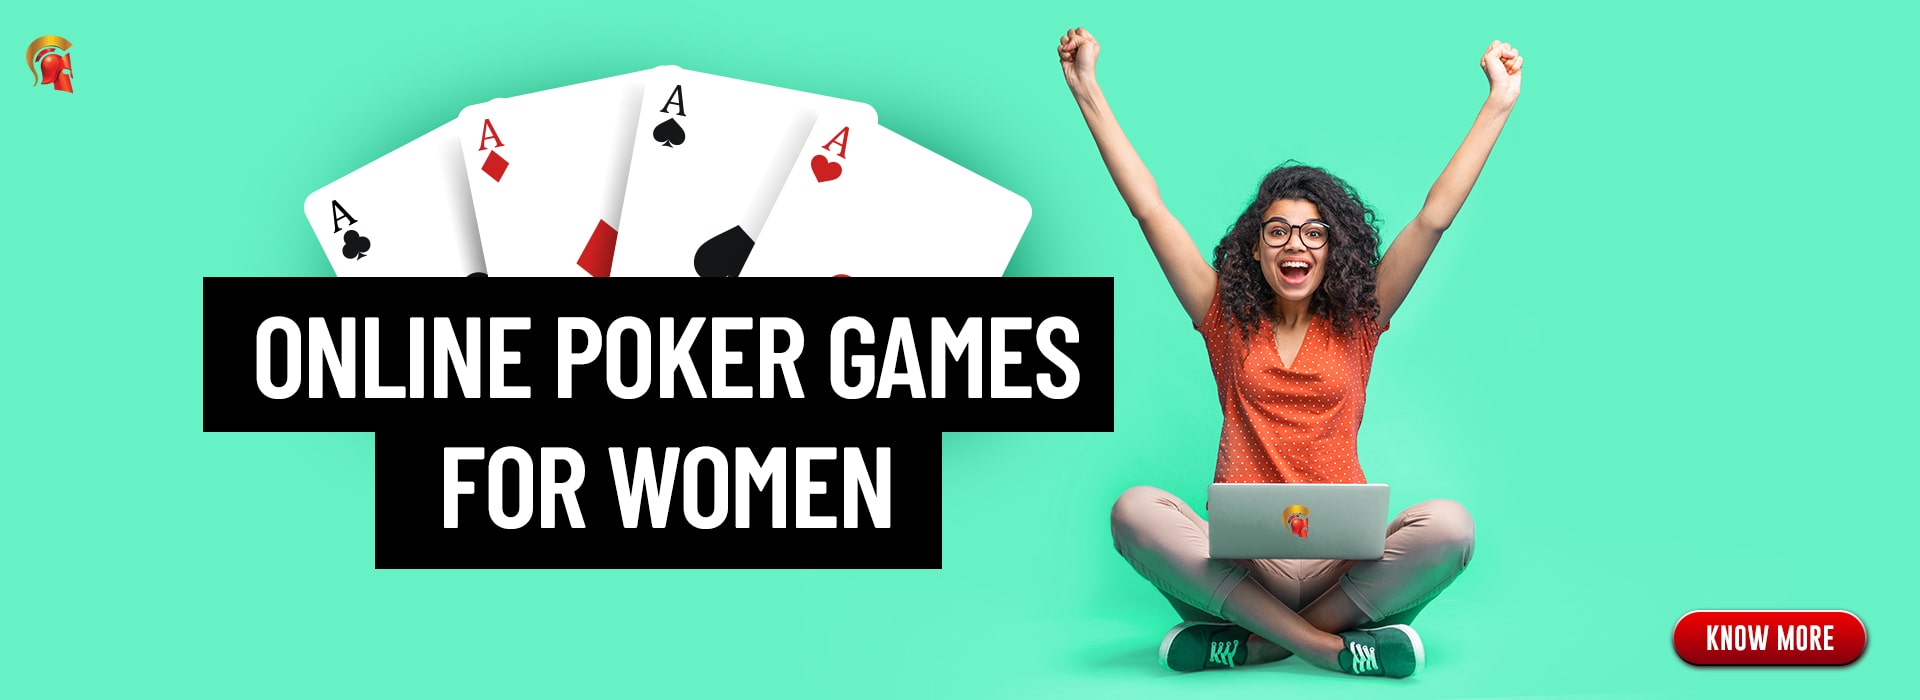 online poker games for women